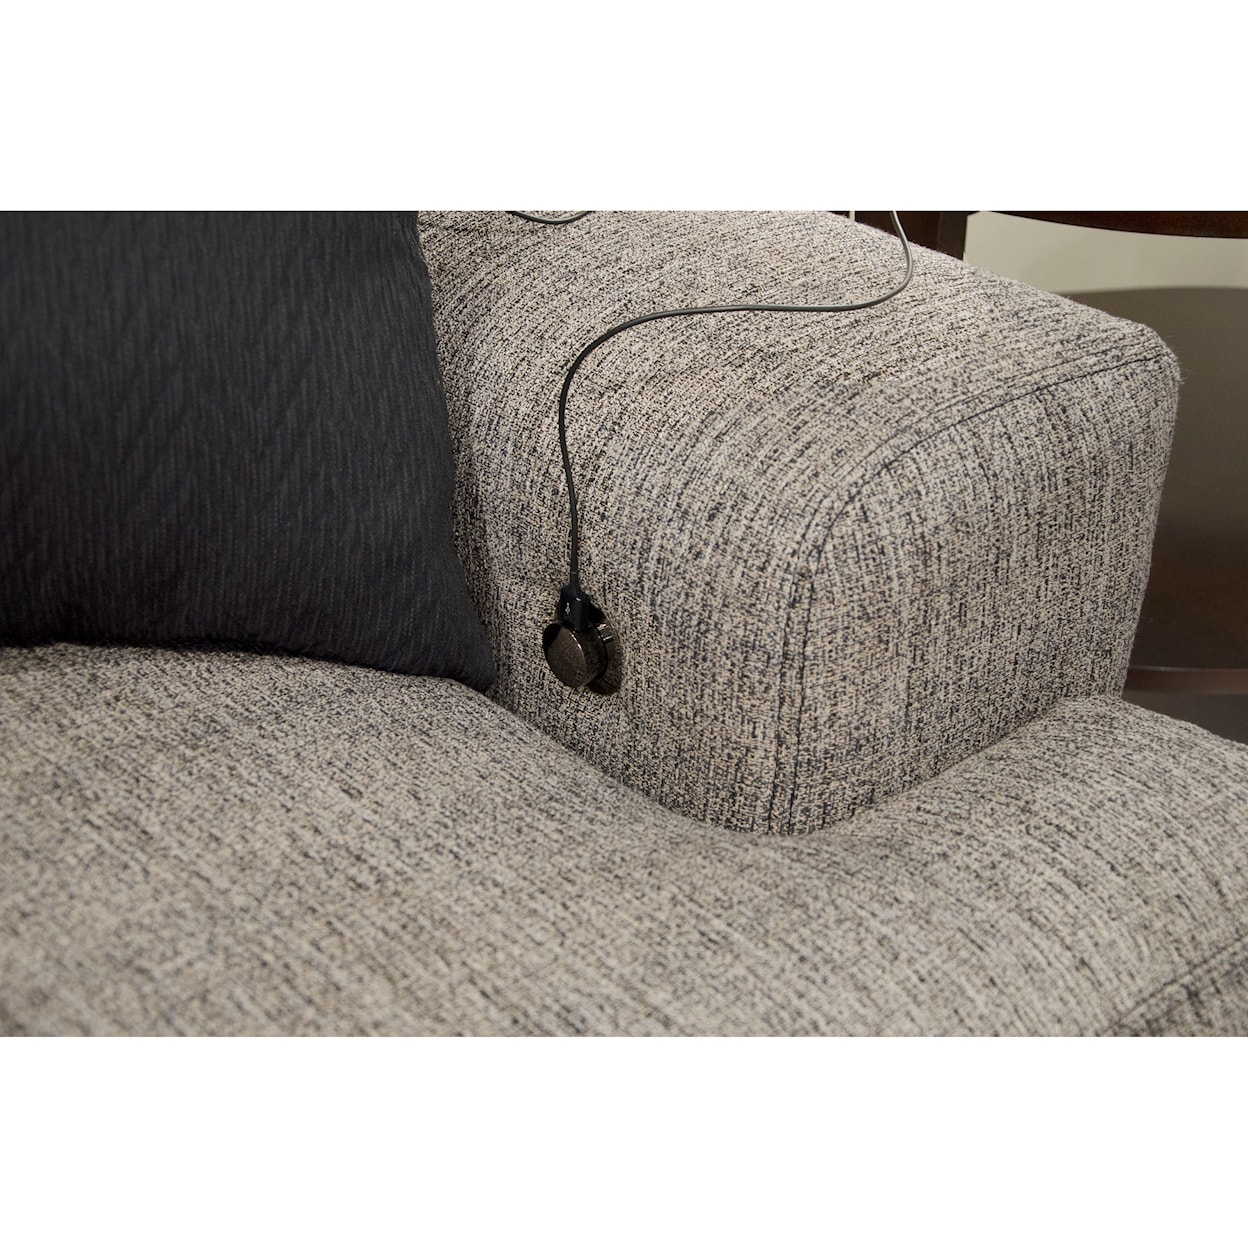 Carolina Furniture 4498 Ava Sectional Sofa with 4 Seats & USB Ports